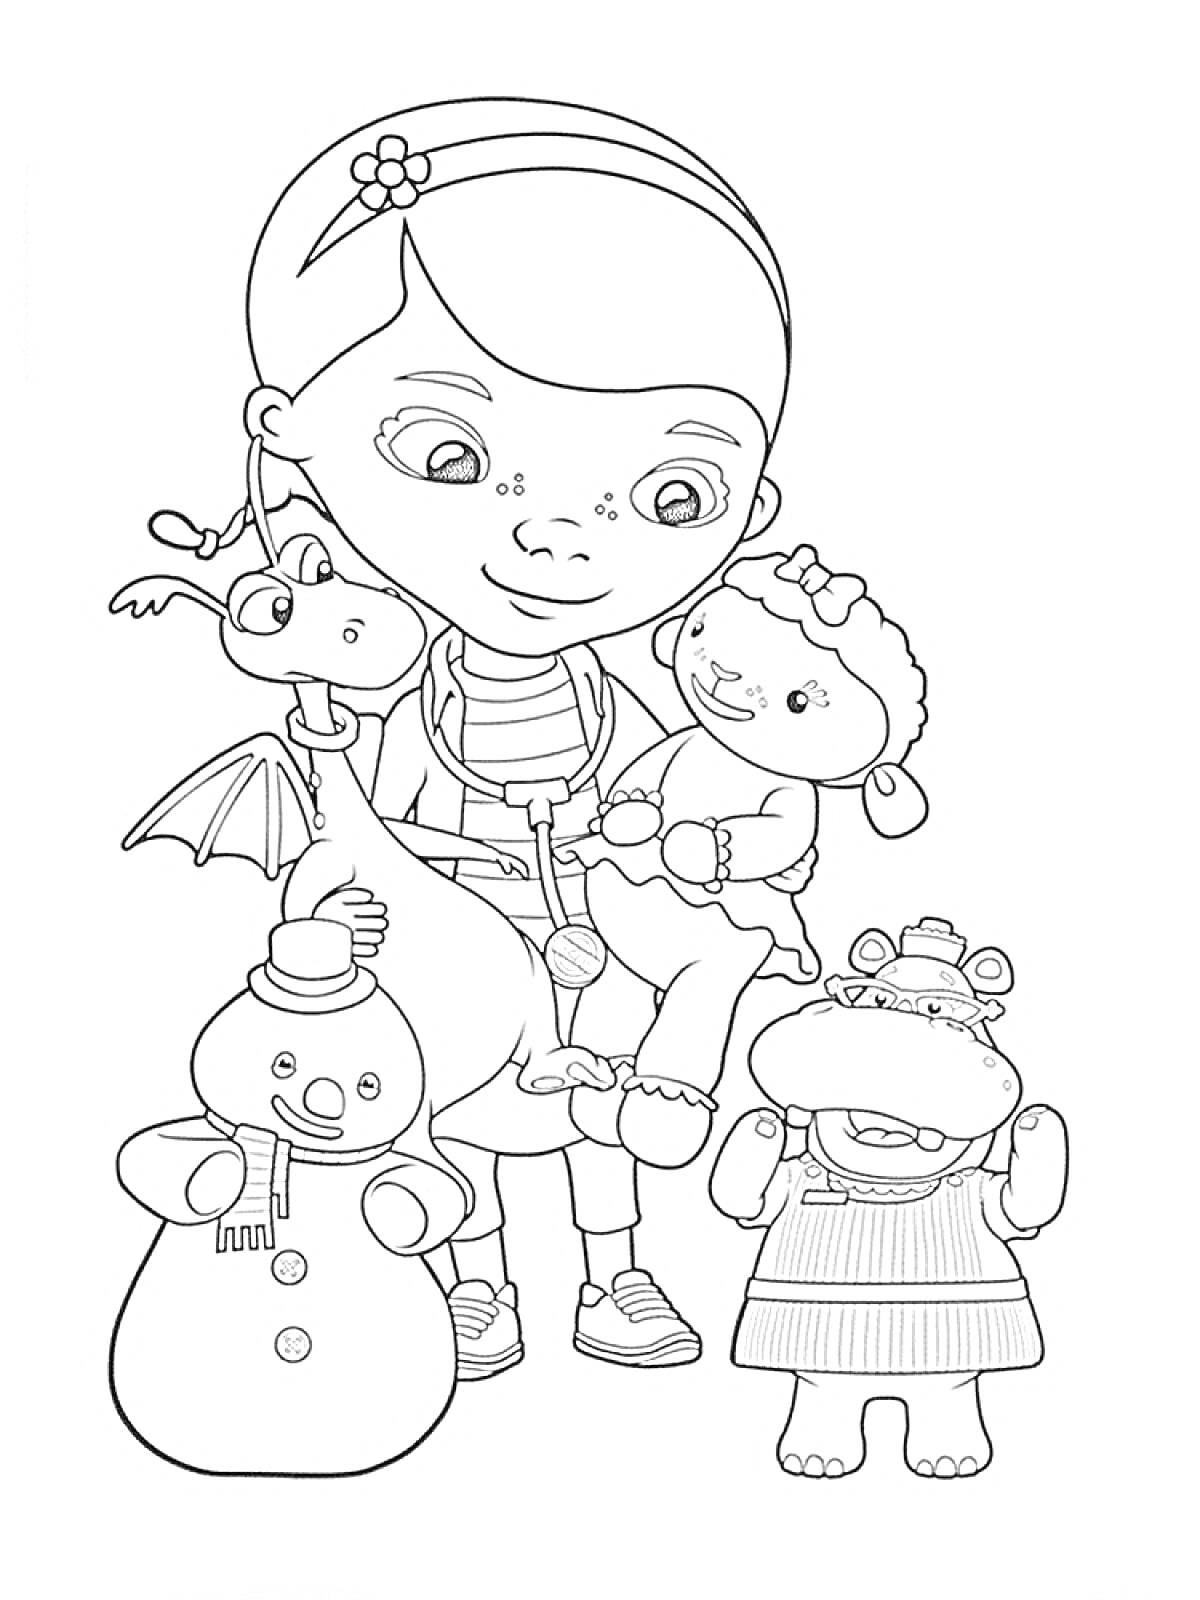 Раскраска Доктор Плюшева с плюшевыми игрушками - дракон, ягненок, снеговик и бегемотиха